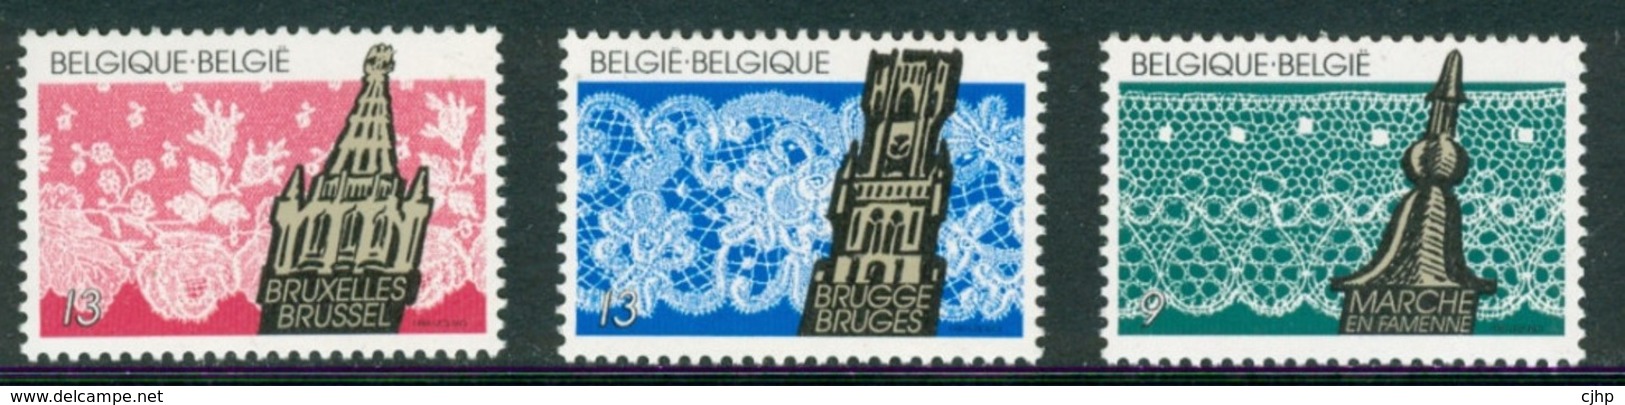 18/8 (4/19/4) Belgique Belgie Belgium    XX Denteles Brugge Bruxelles Marche En Famenne - Textile